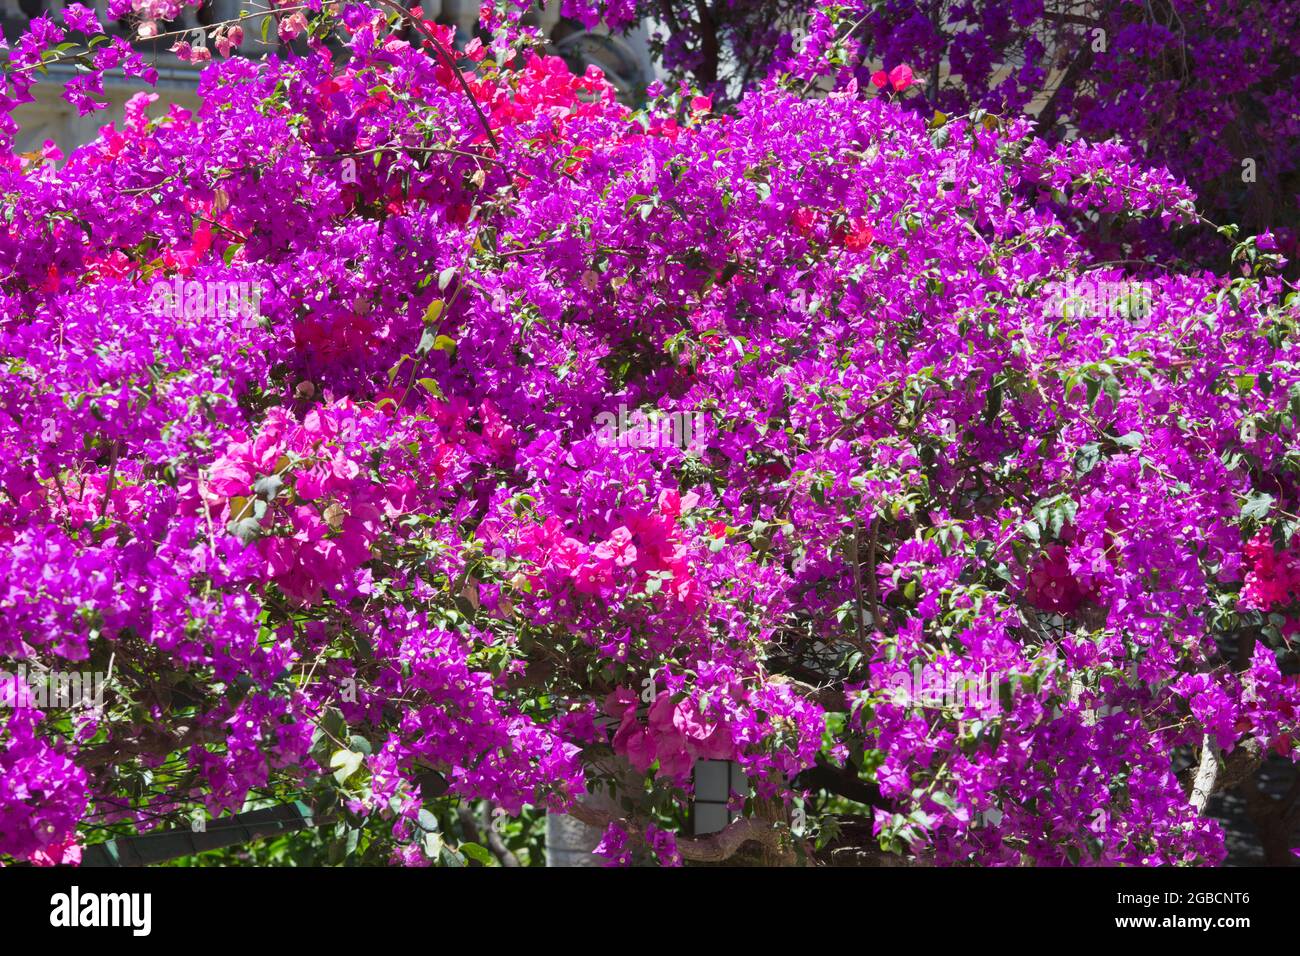 Taormina, Messina, Sicilia, Italia. Attraente baldacchino di bougainvillea rosa che adorna il pergolato tipico nel cuore della Città Vecchia. Foto Stock